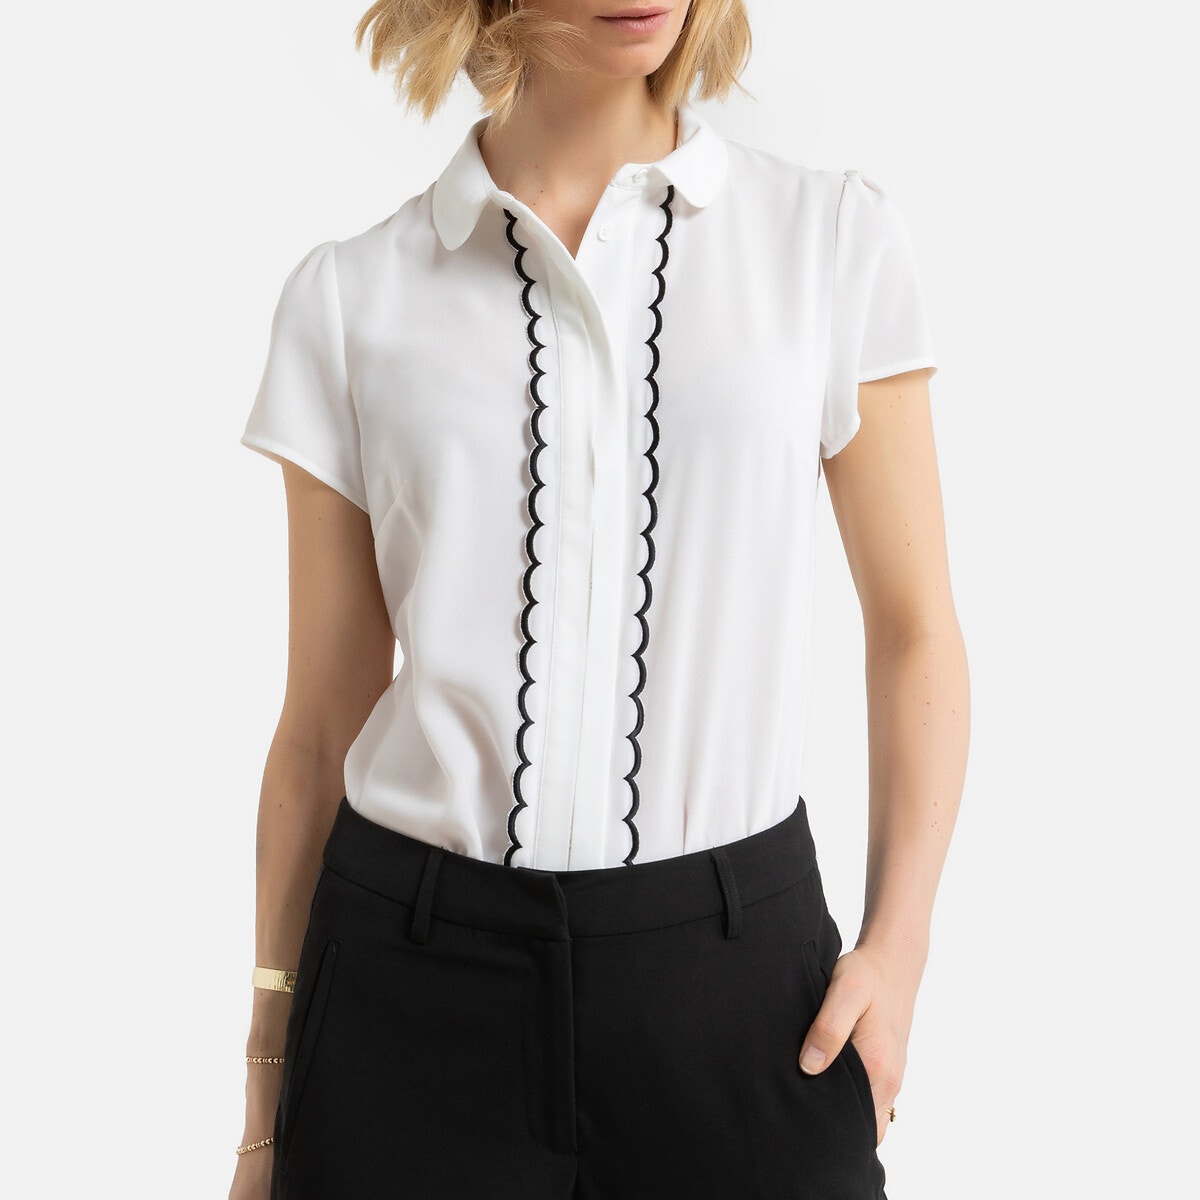 Κοντομάνικη μπλούζα με στρογγυλό γιακά ΓΥΝΑΙΚΑ | Μπλούζες & Πουκάμισα | Τοπ